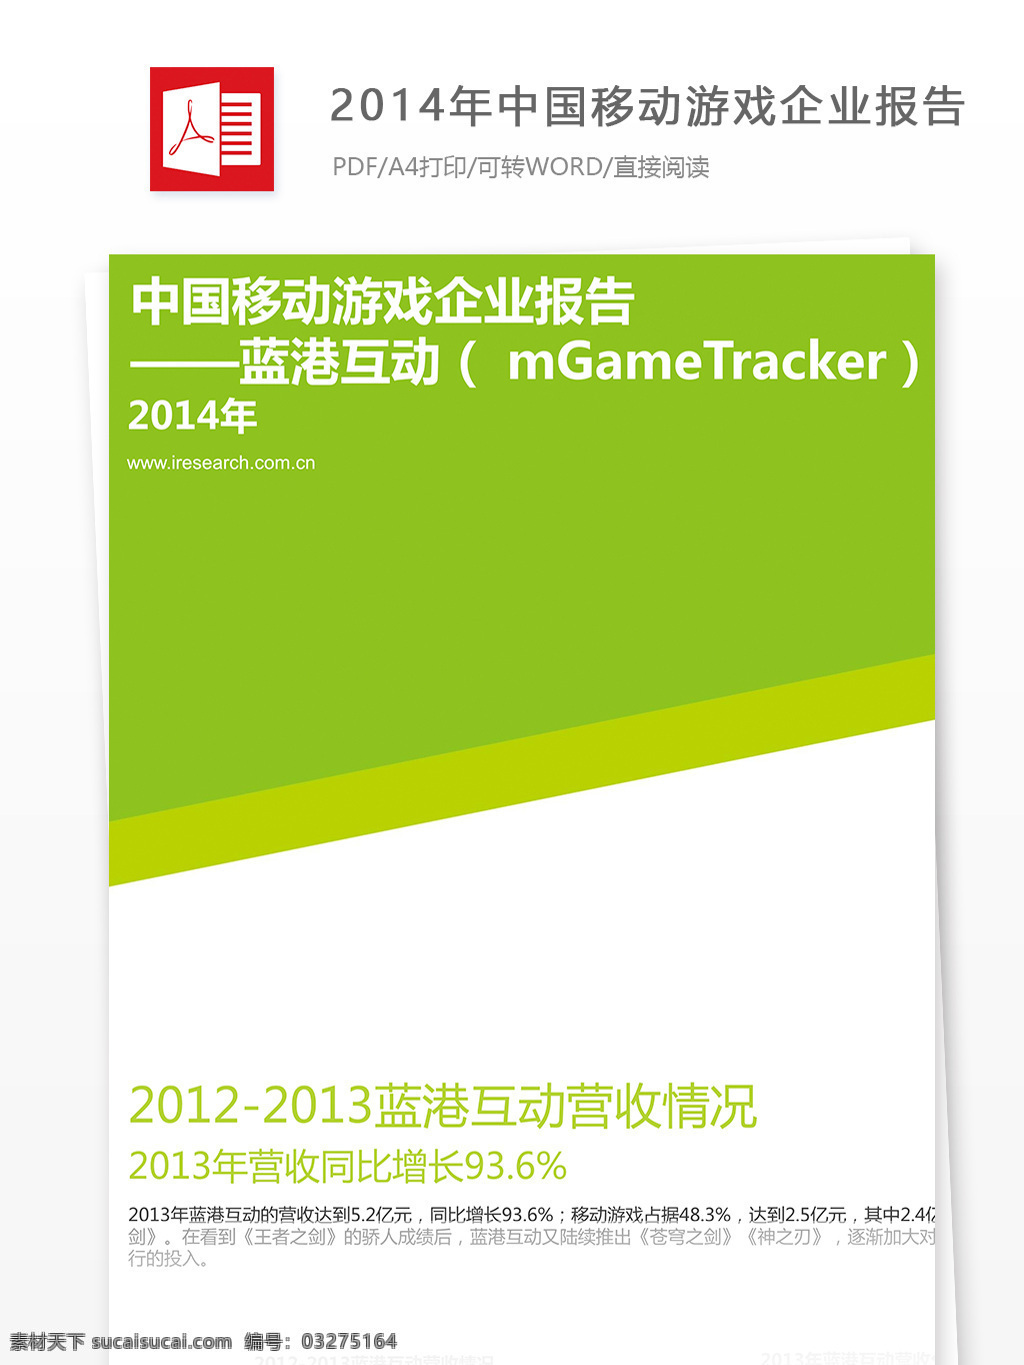 中国移动 游戏 企业 报告 移动 2014年 行业分析报告 游戏行业 分析报告